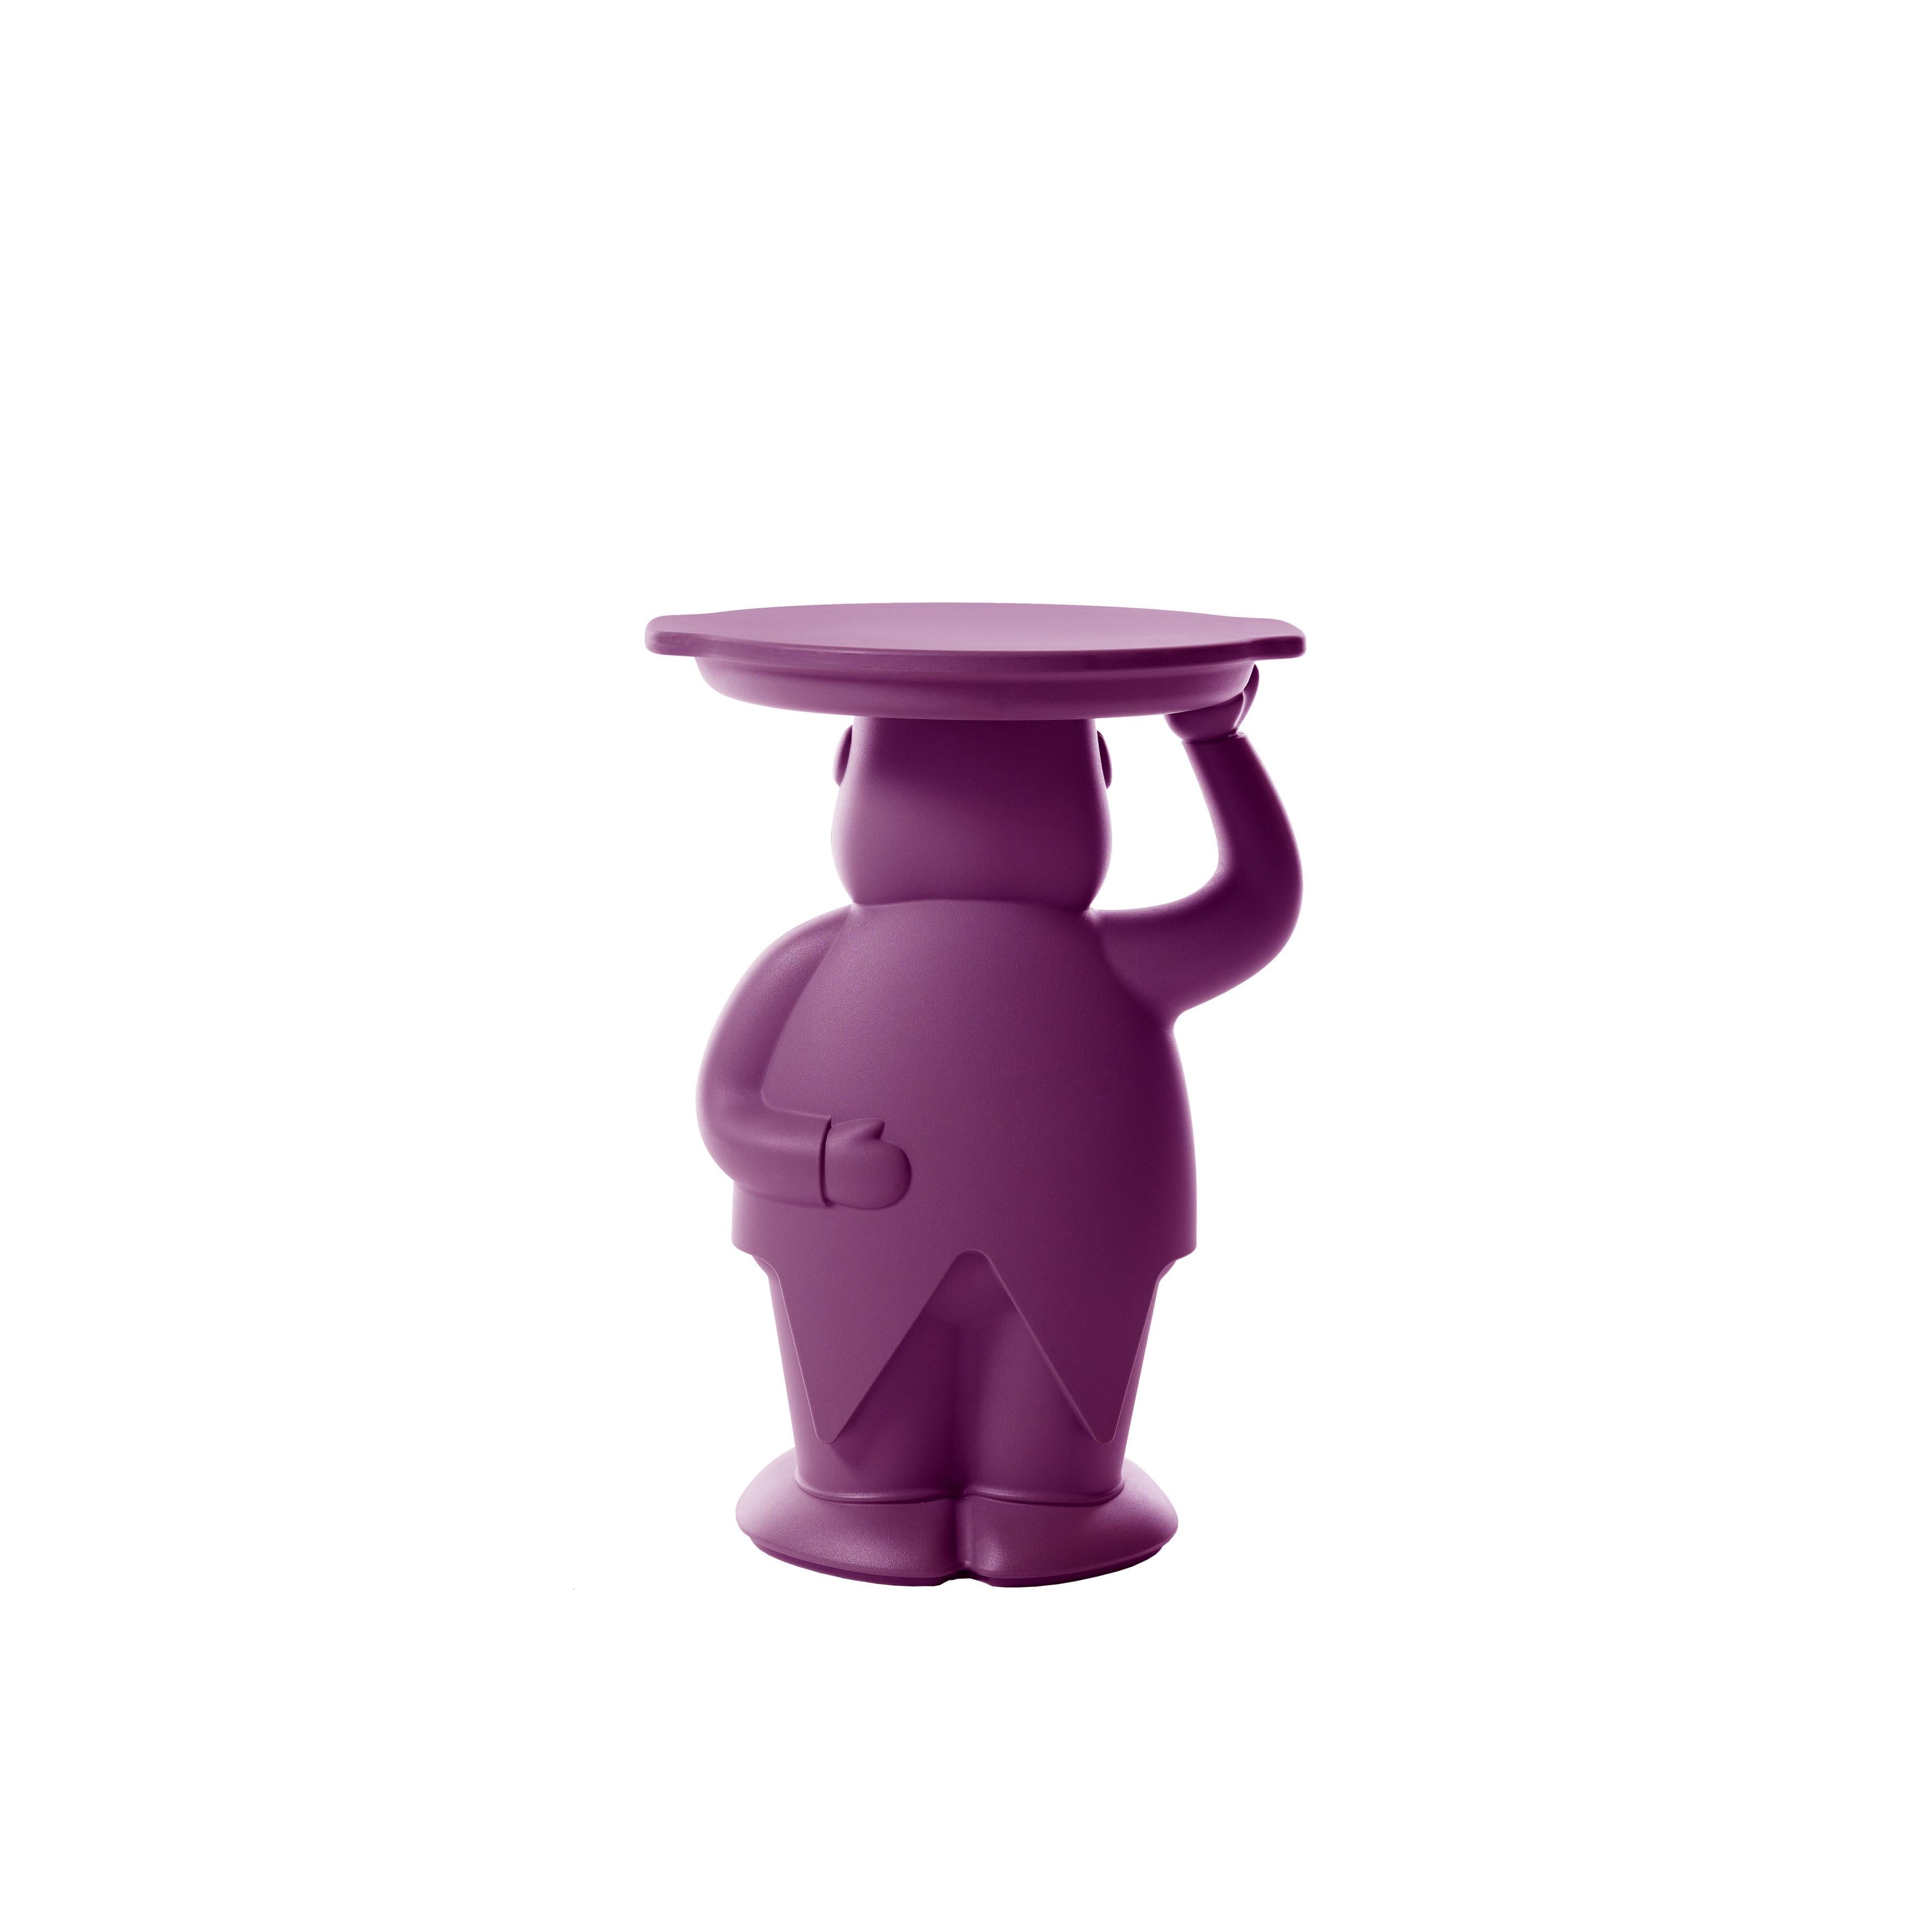 Italian Slide Design Ambrogio Servant Table in Plum Purple by Favaretto & Partners For Sale